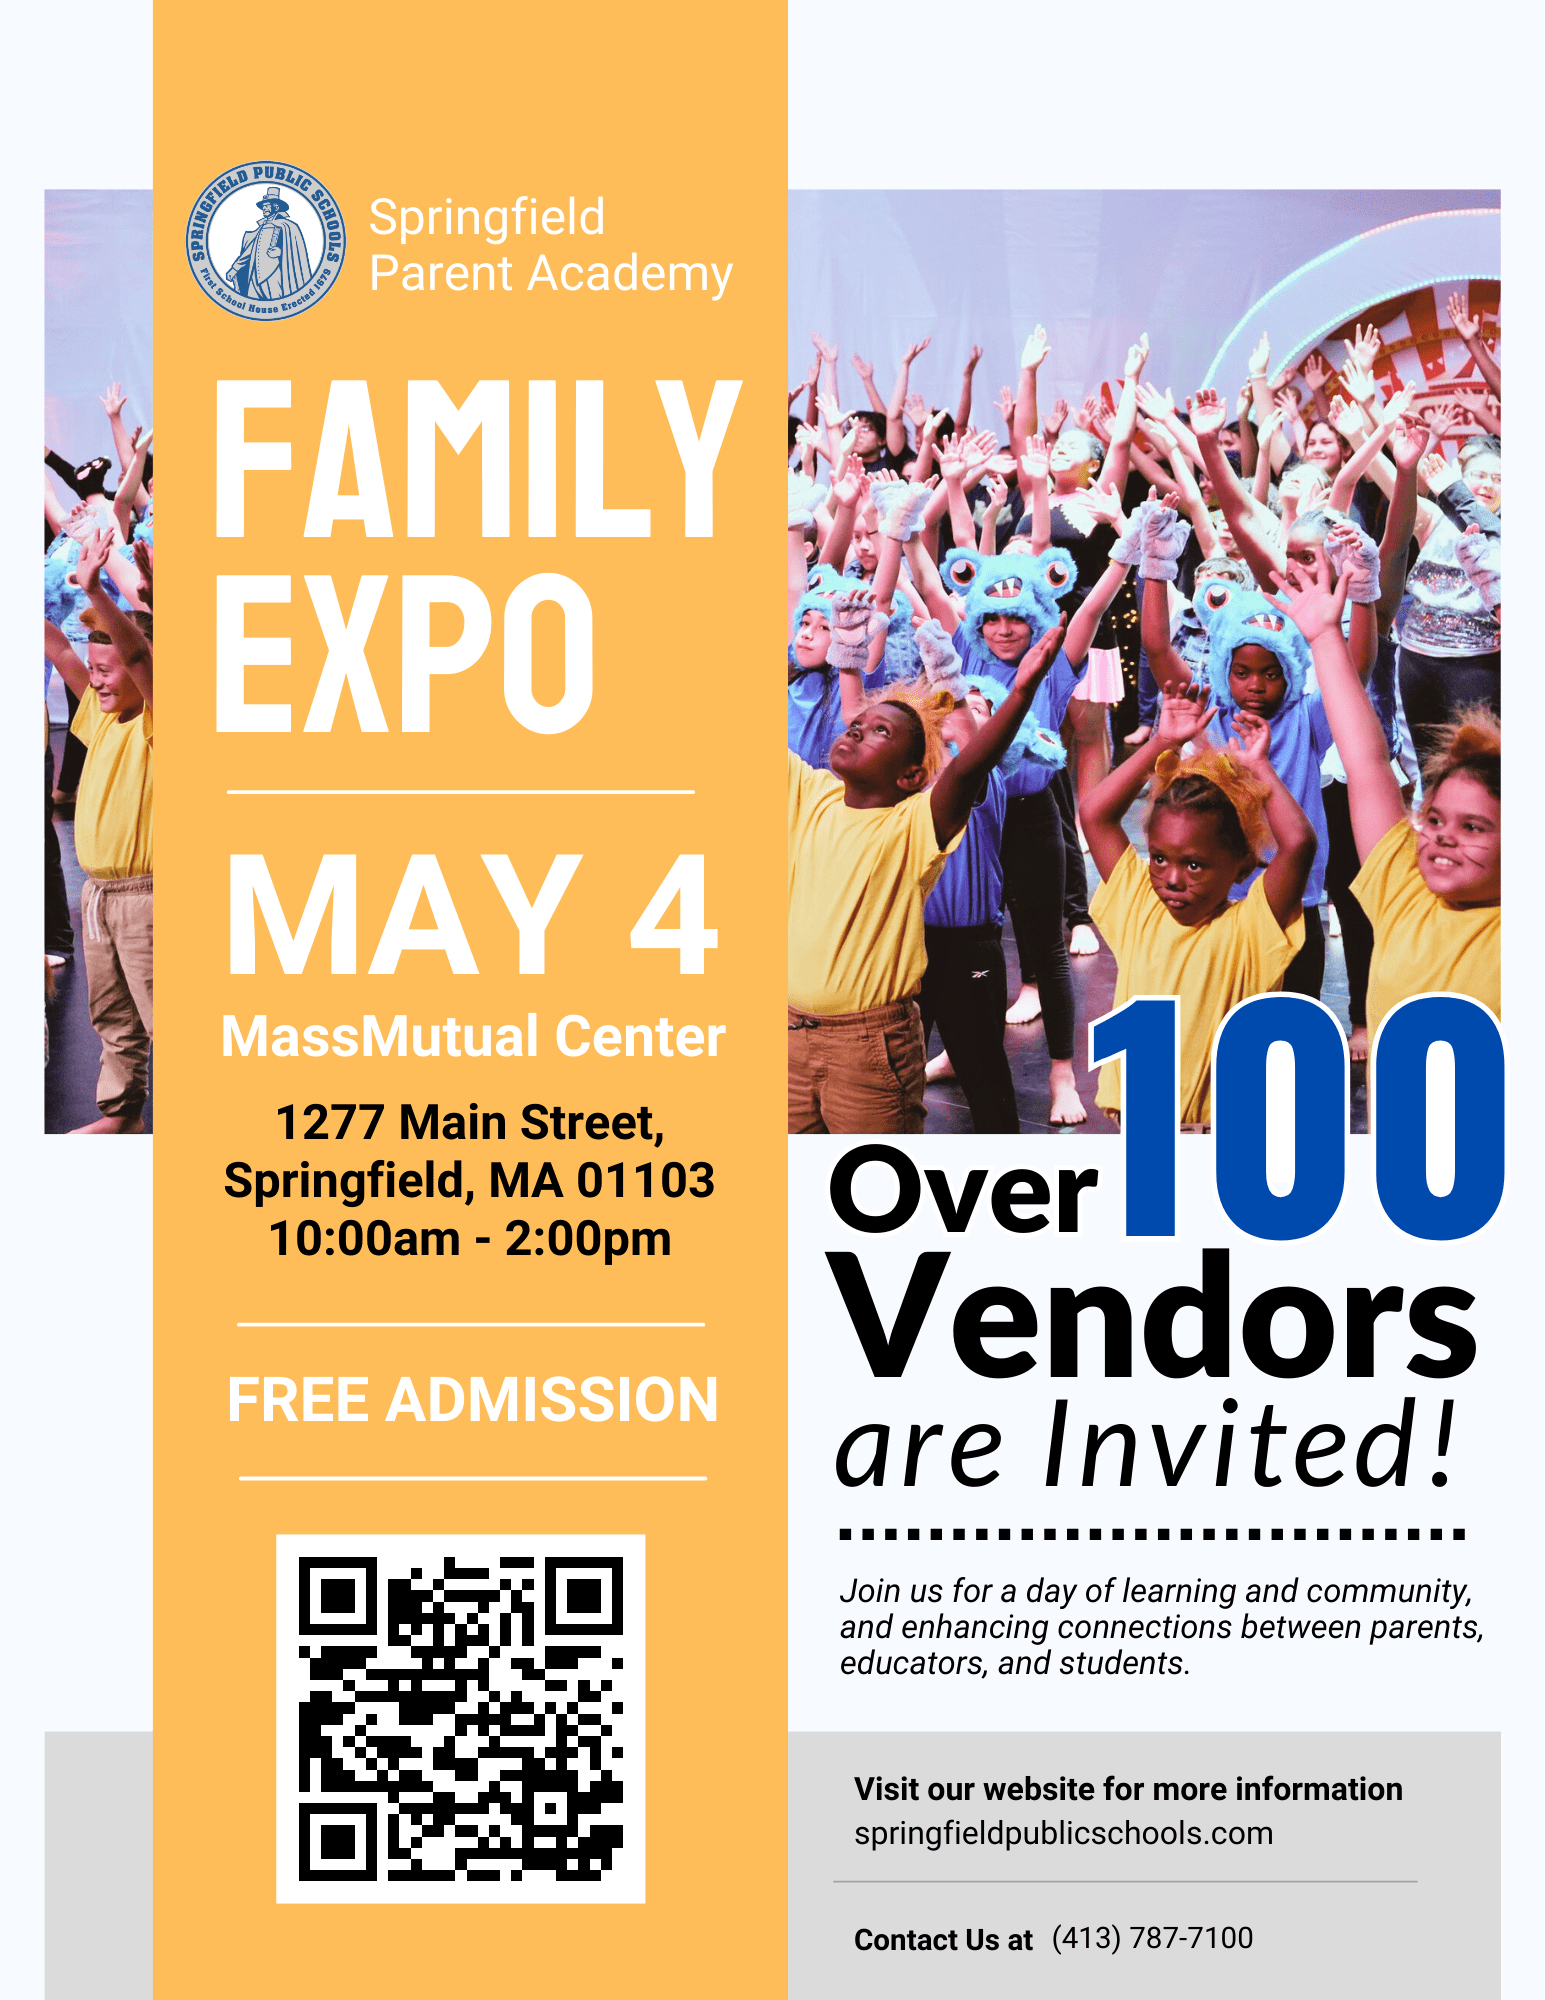 Springfield Public Schools: Family Expo